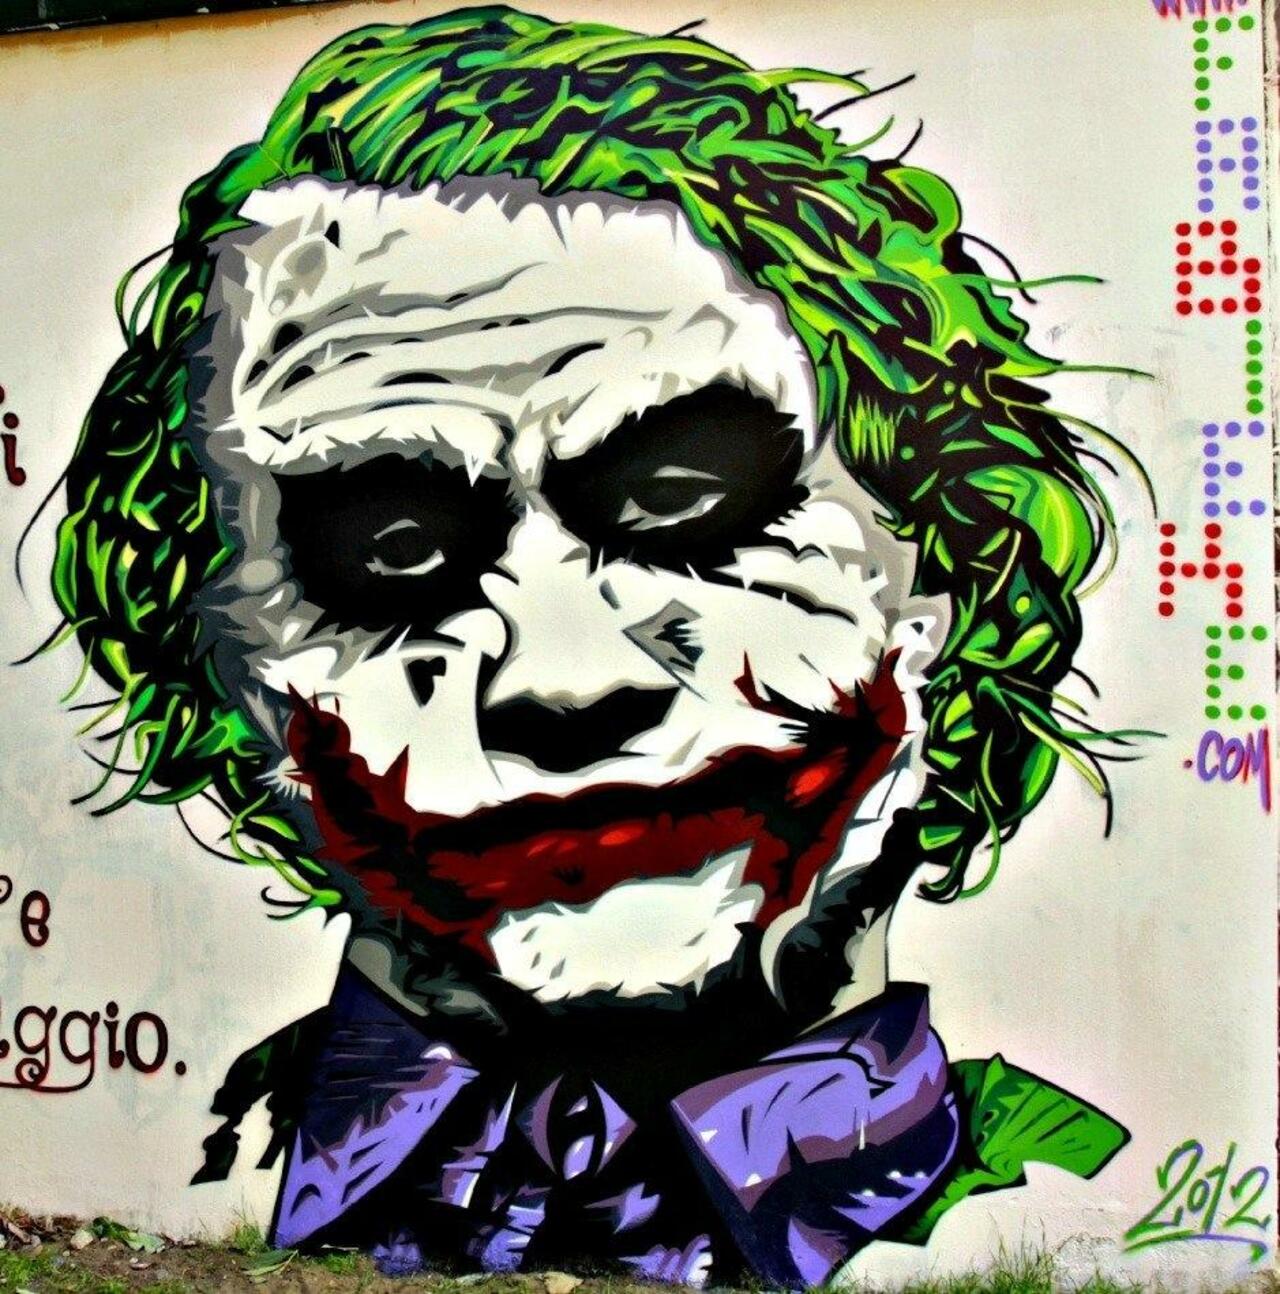 “@Pitchuskita: By FABIEKE from Bologna, Italy #streetart #graffiti #art http://t.co/IXlkItbm32